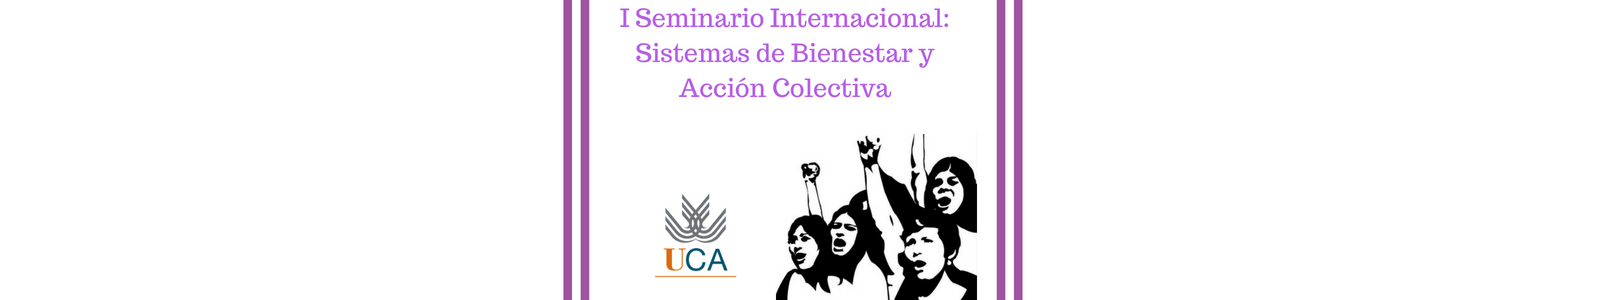 I Seminario Internacional Sistemas de Bienestar y Acción Colectiva. Mujeres y movimiento obrero.